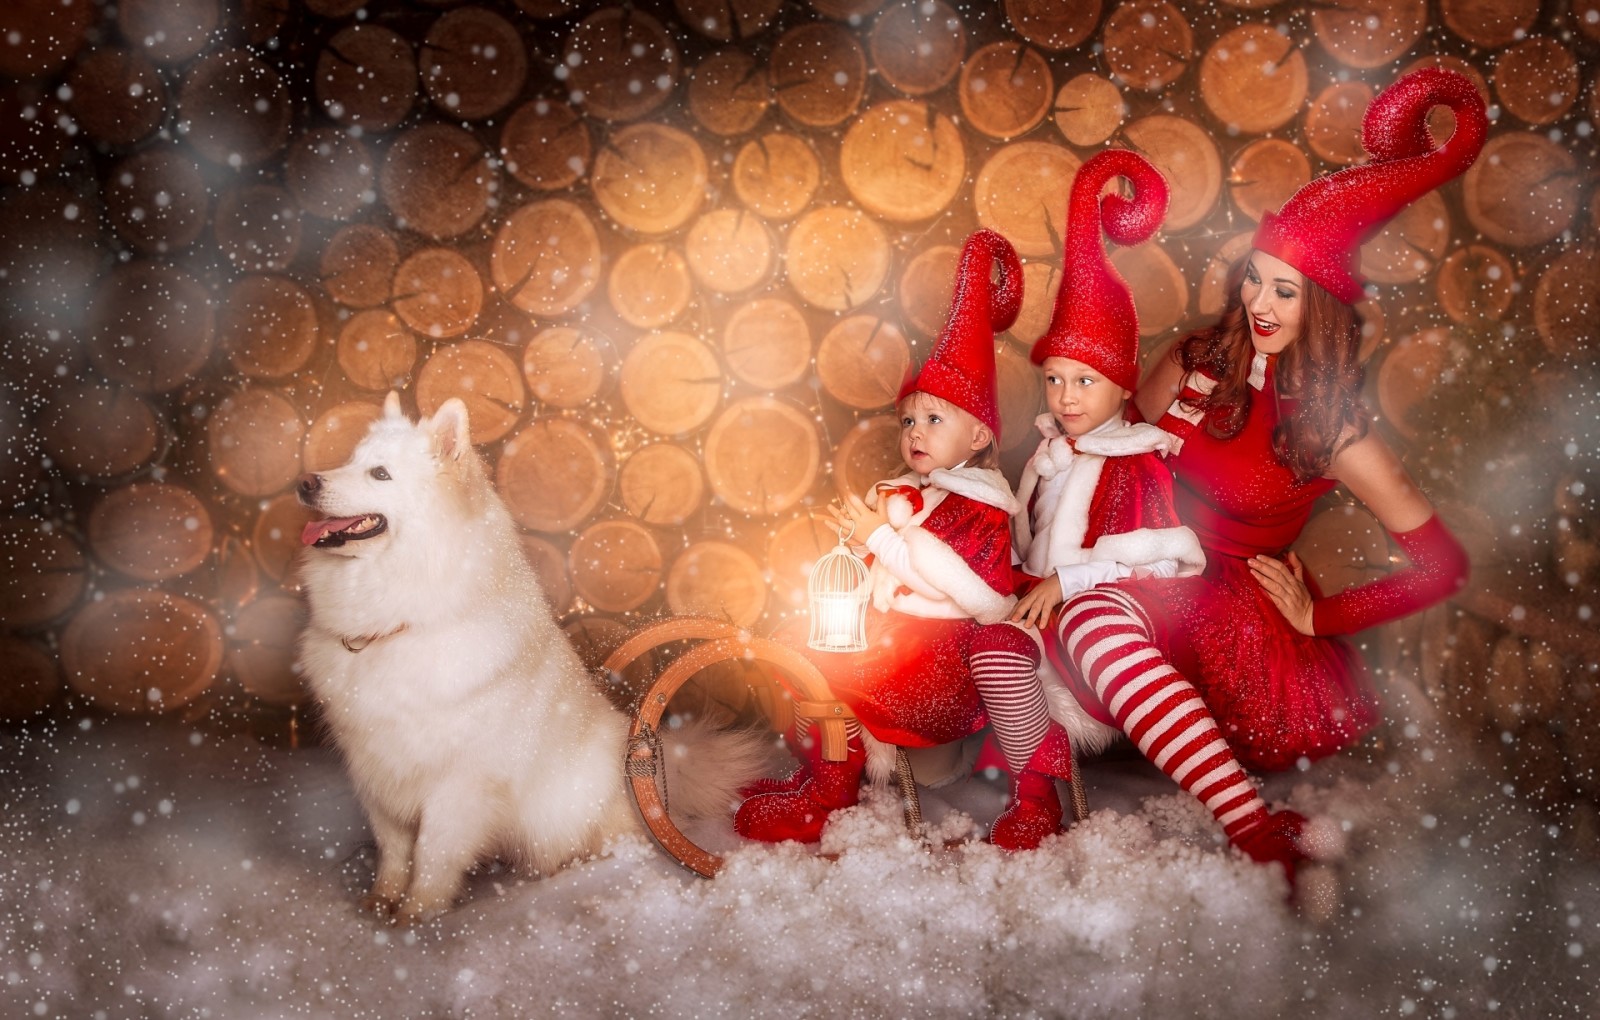 雪, 狗, 孩子们, 女孩, 雪橇, 萨摩耶, 瓶盖